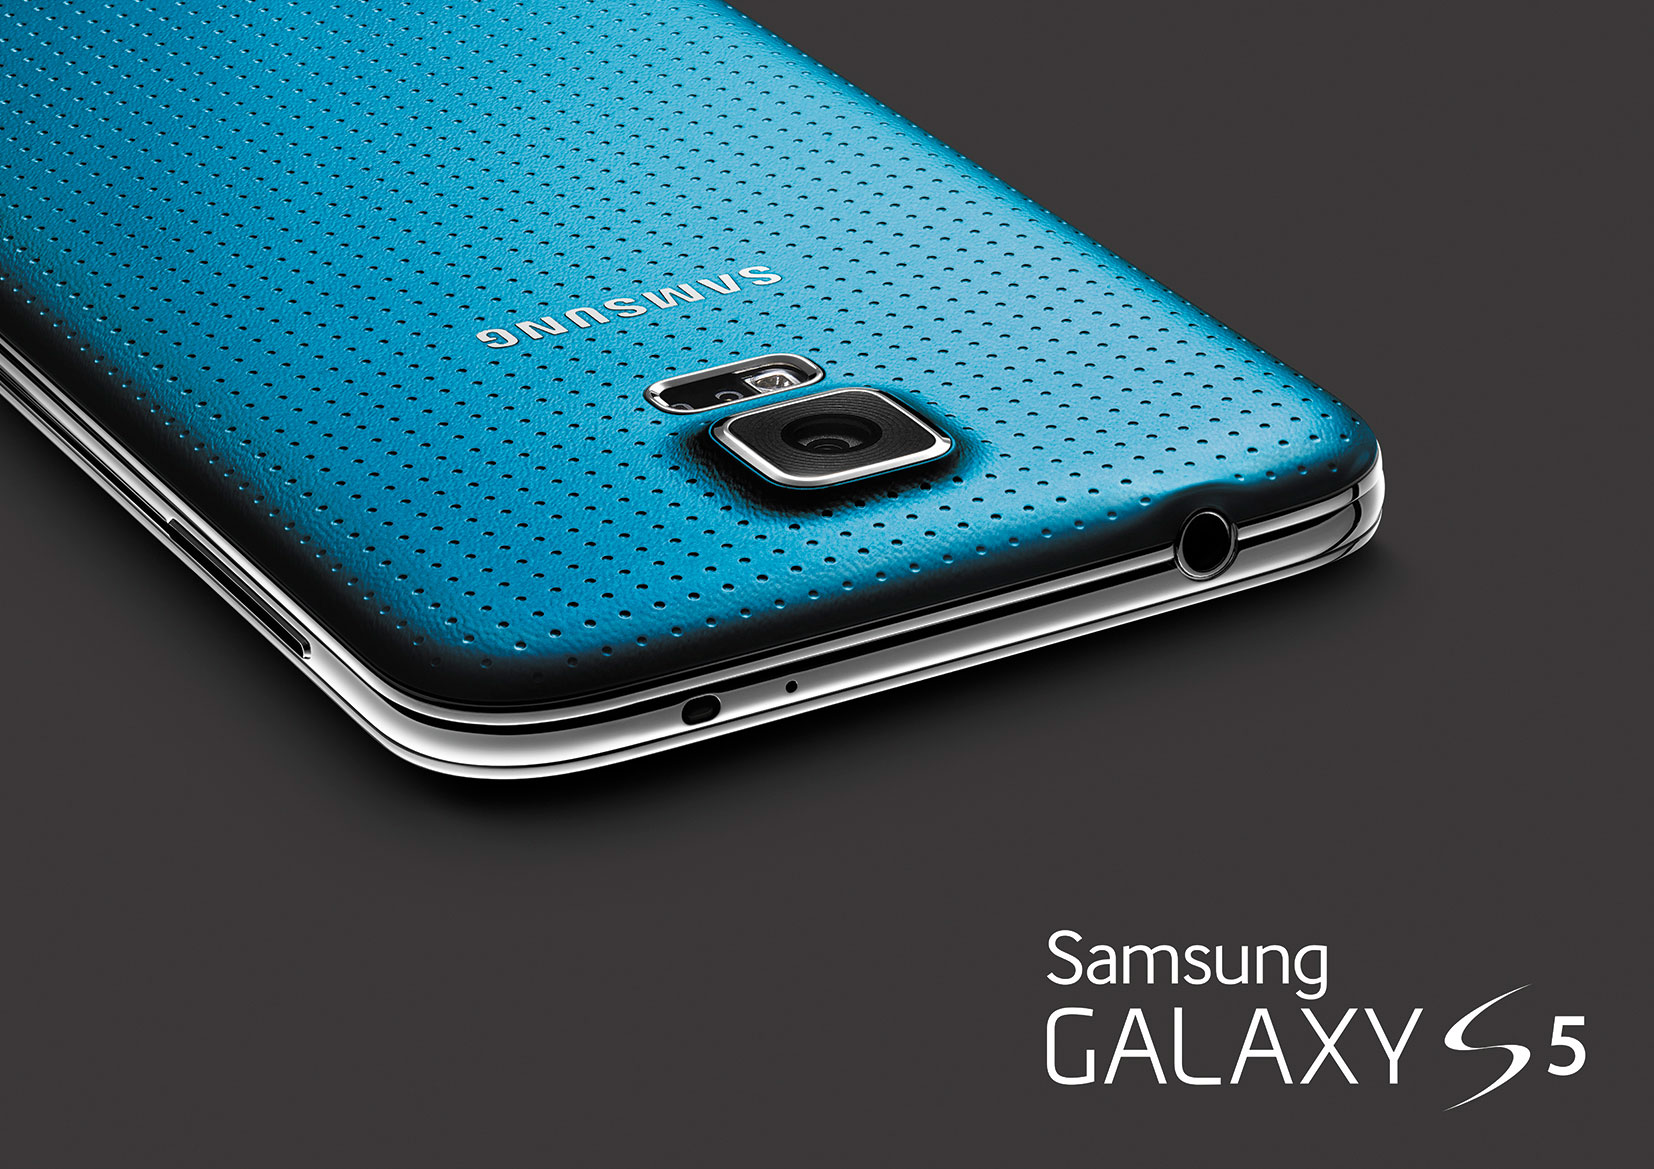 Este é o Galaxy S5: leitor de impressões digitais, filmagem em 4K, novo design e hardware mais potente